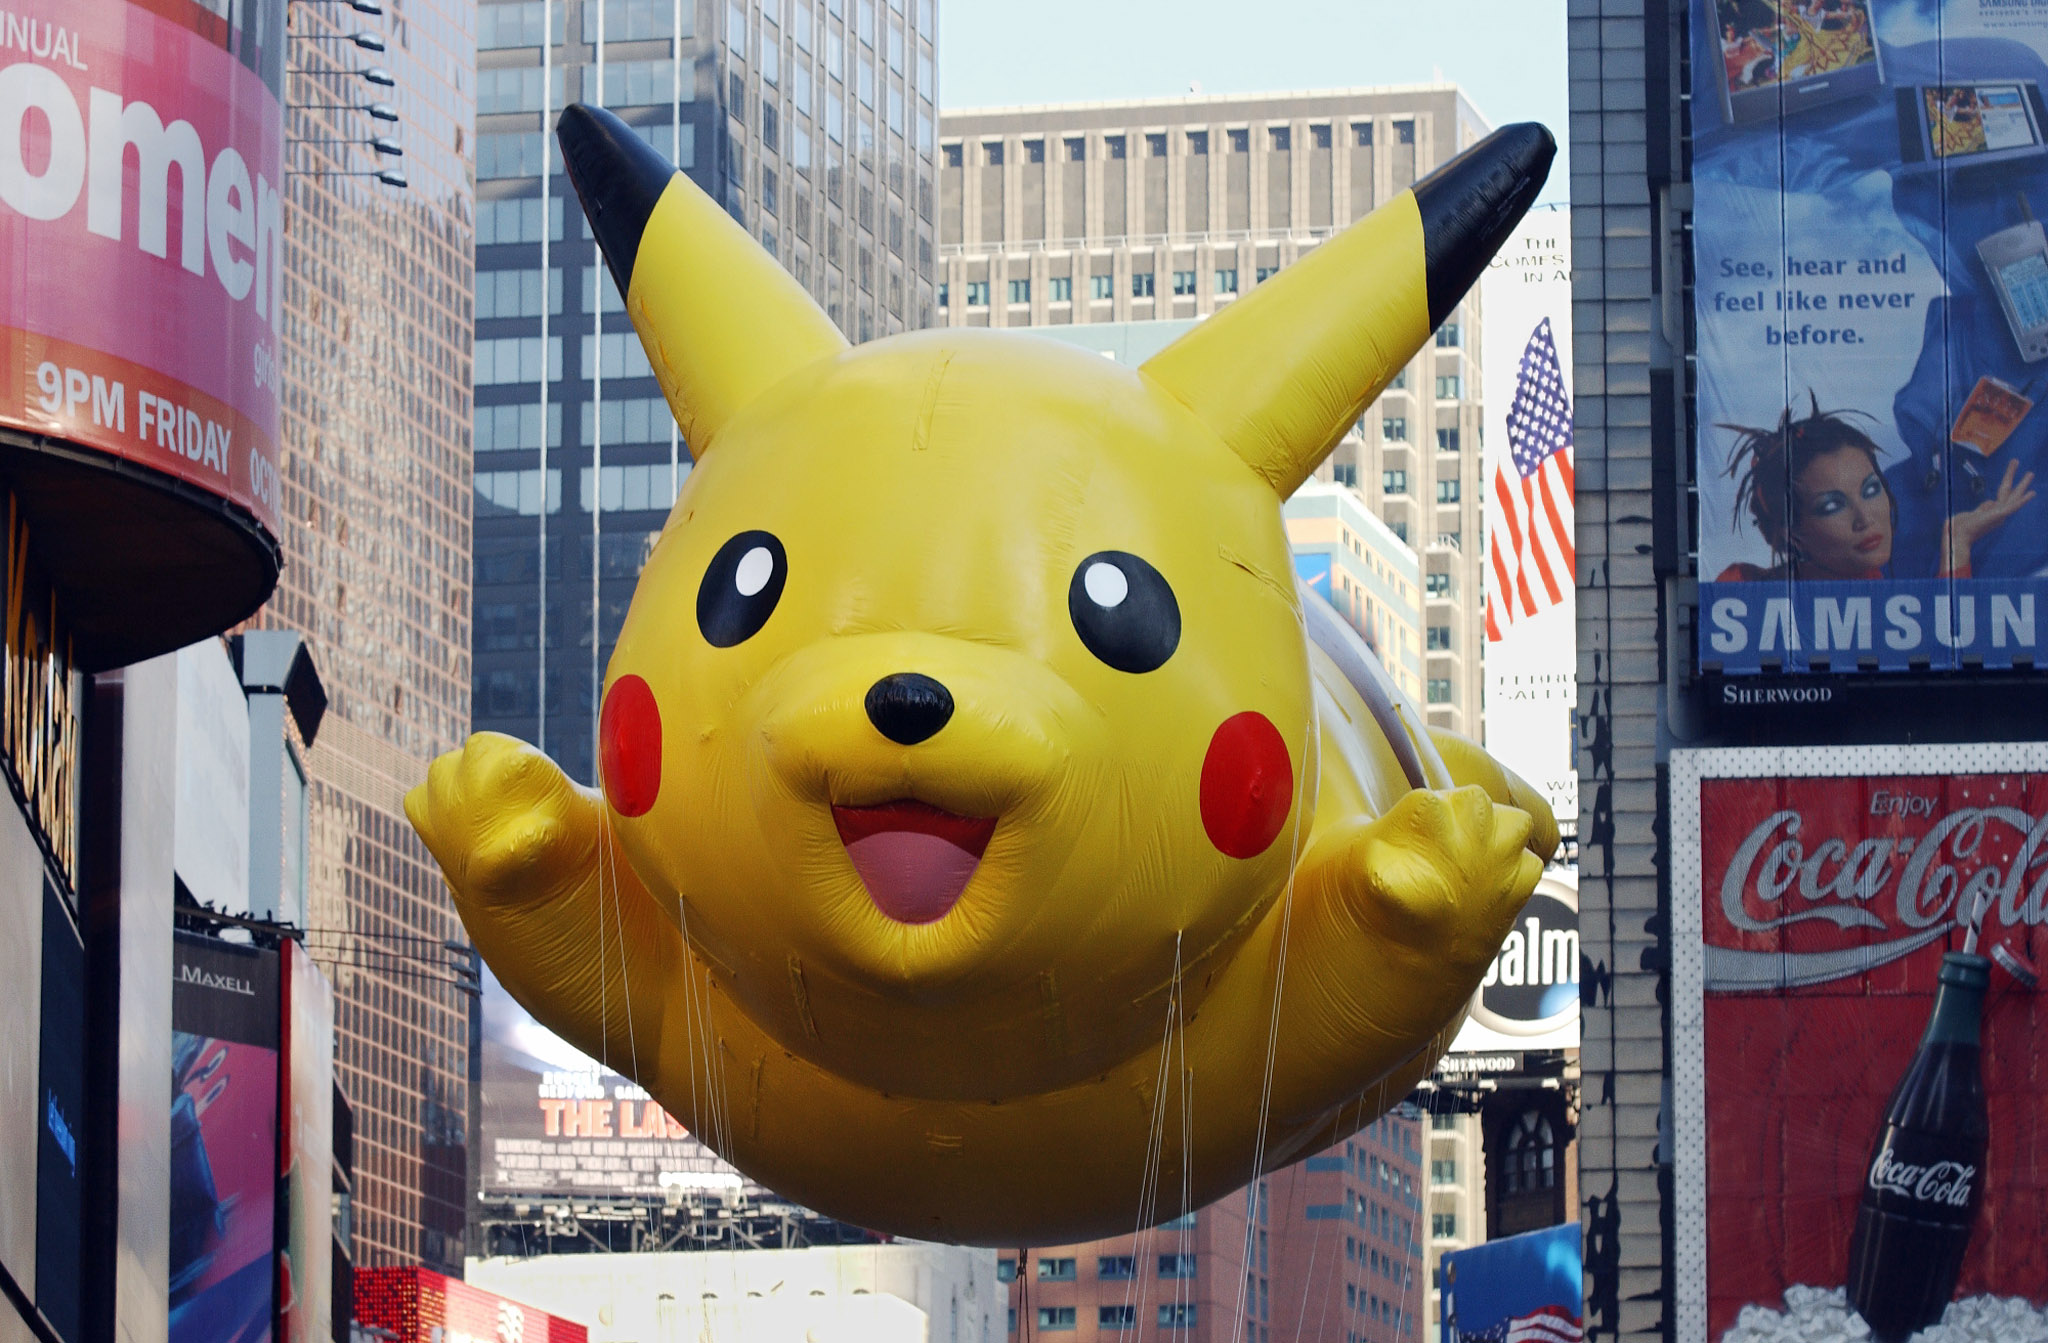 Miles disfrutan del desfile de globos gigantes en NY - Los Angeles Times